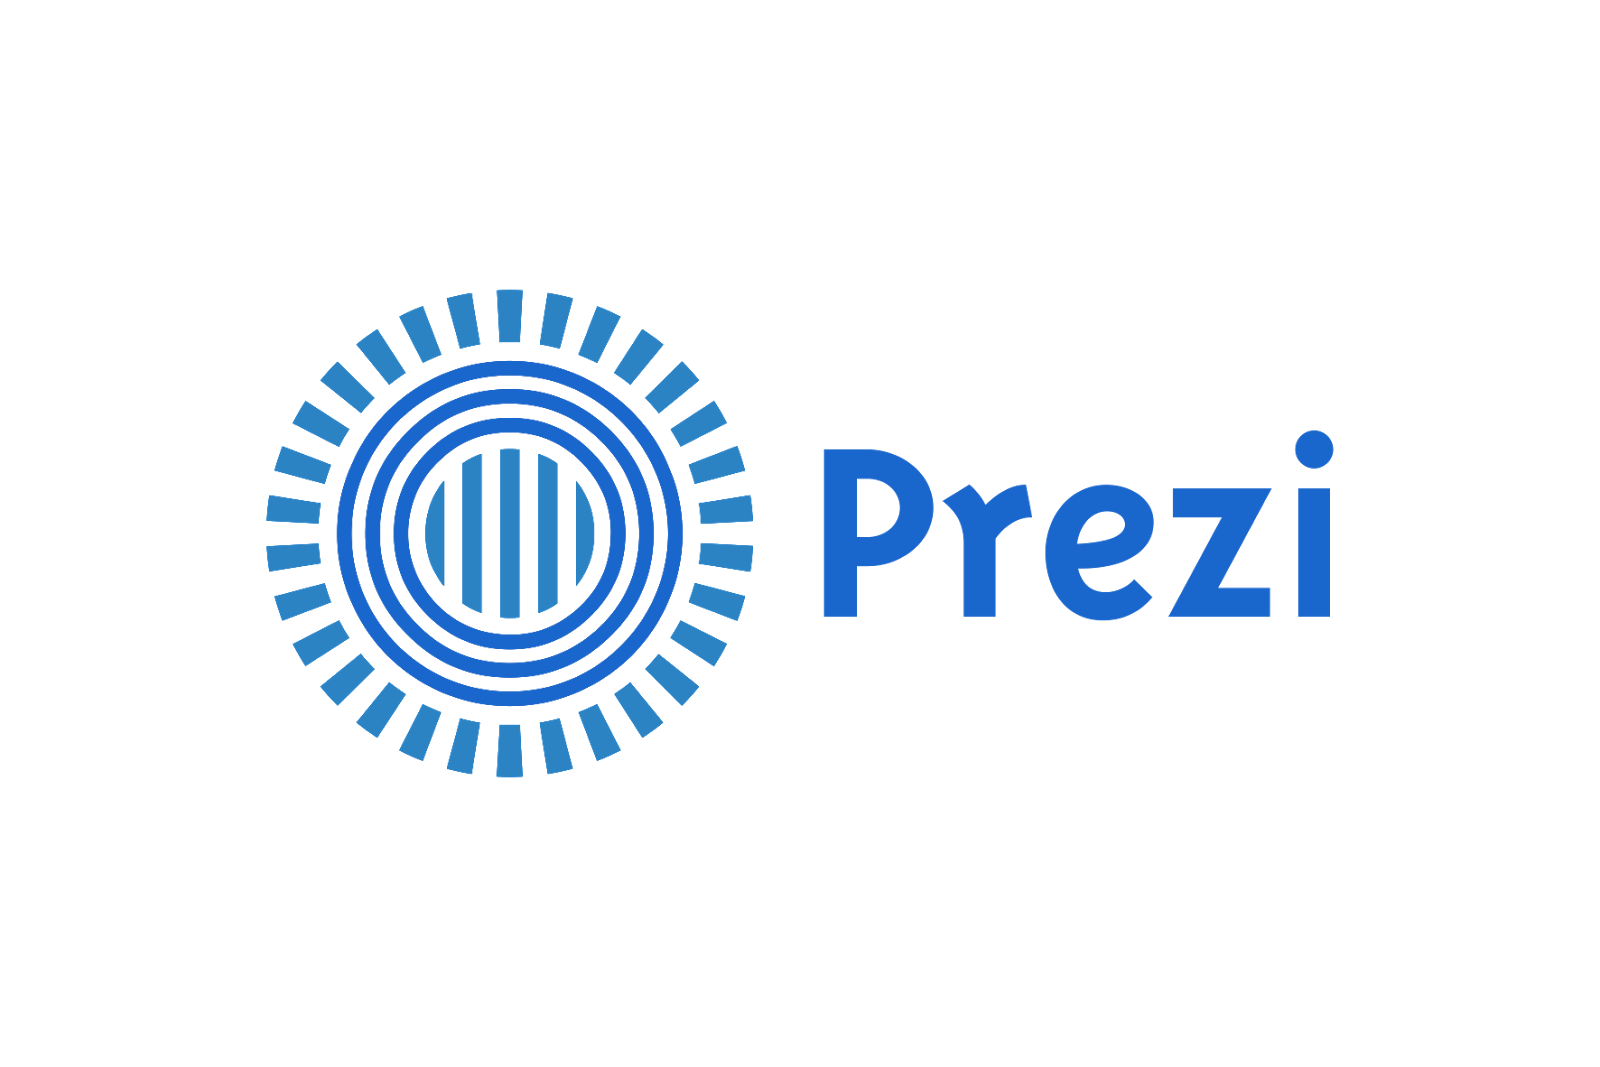 prezi presentation logo